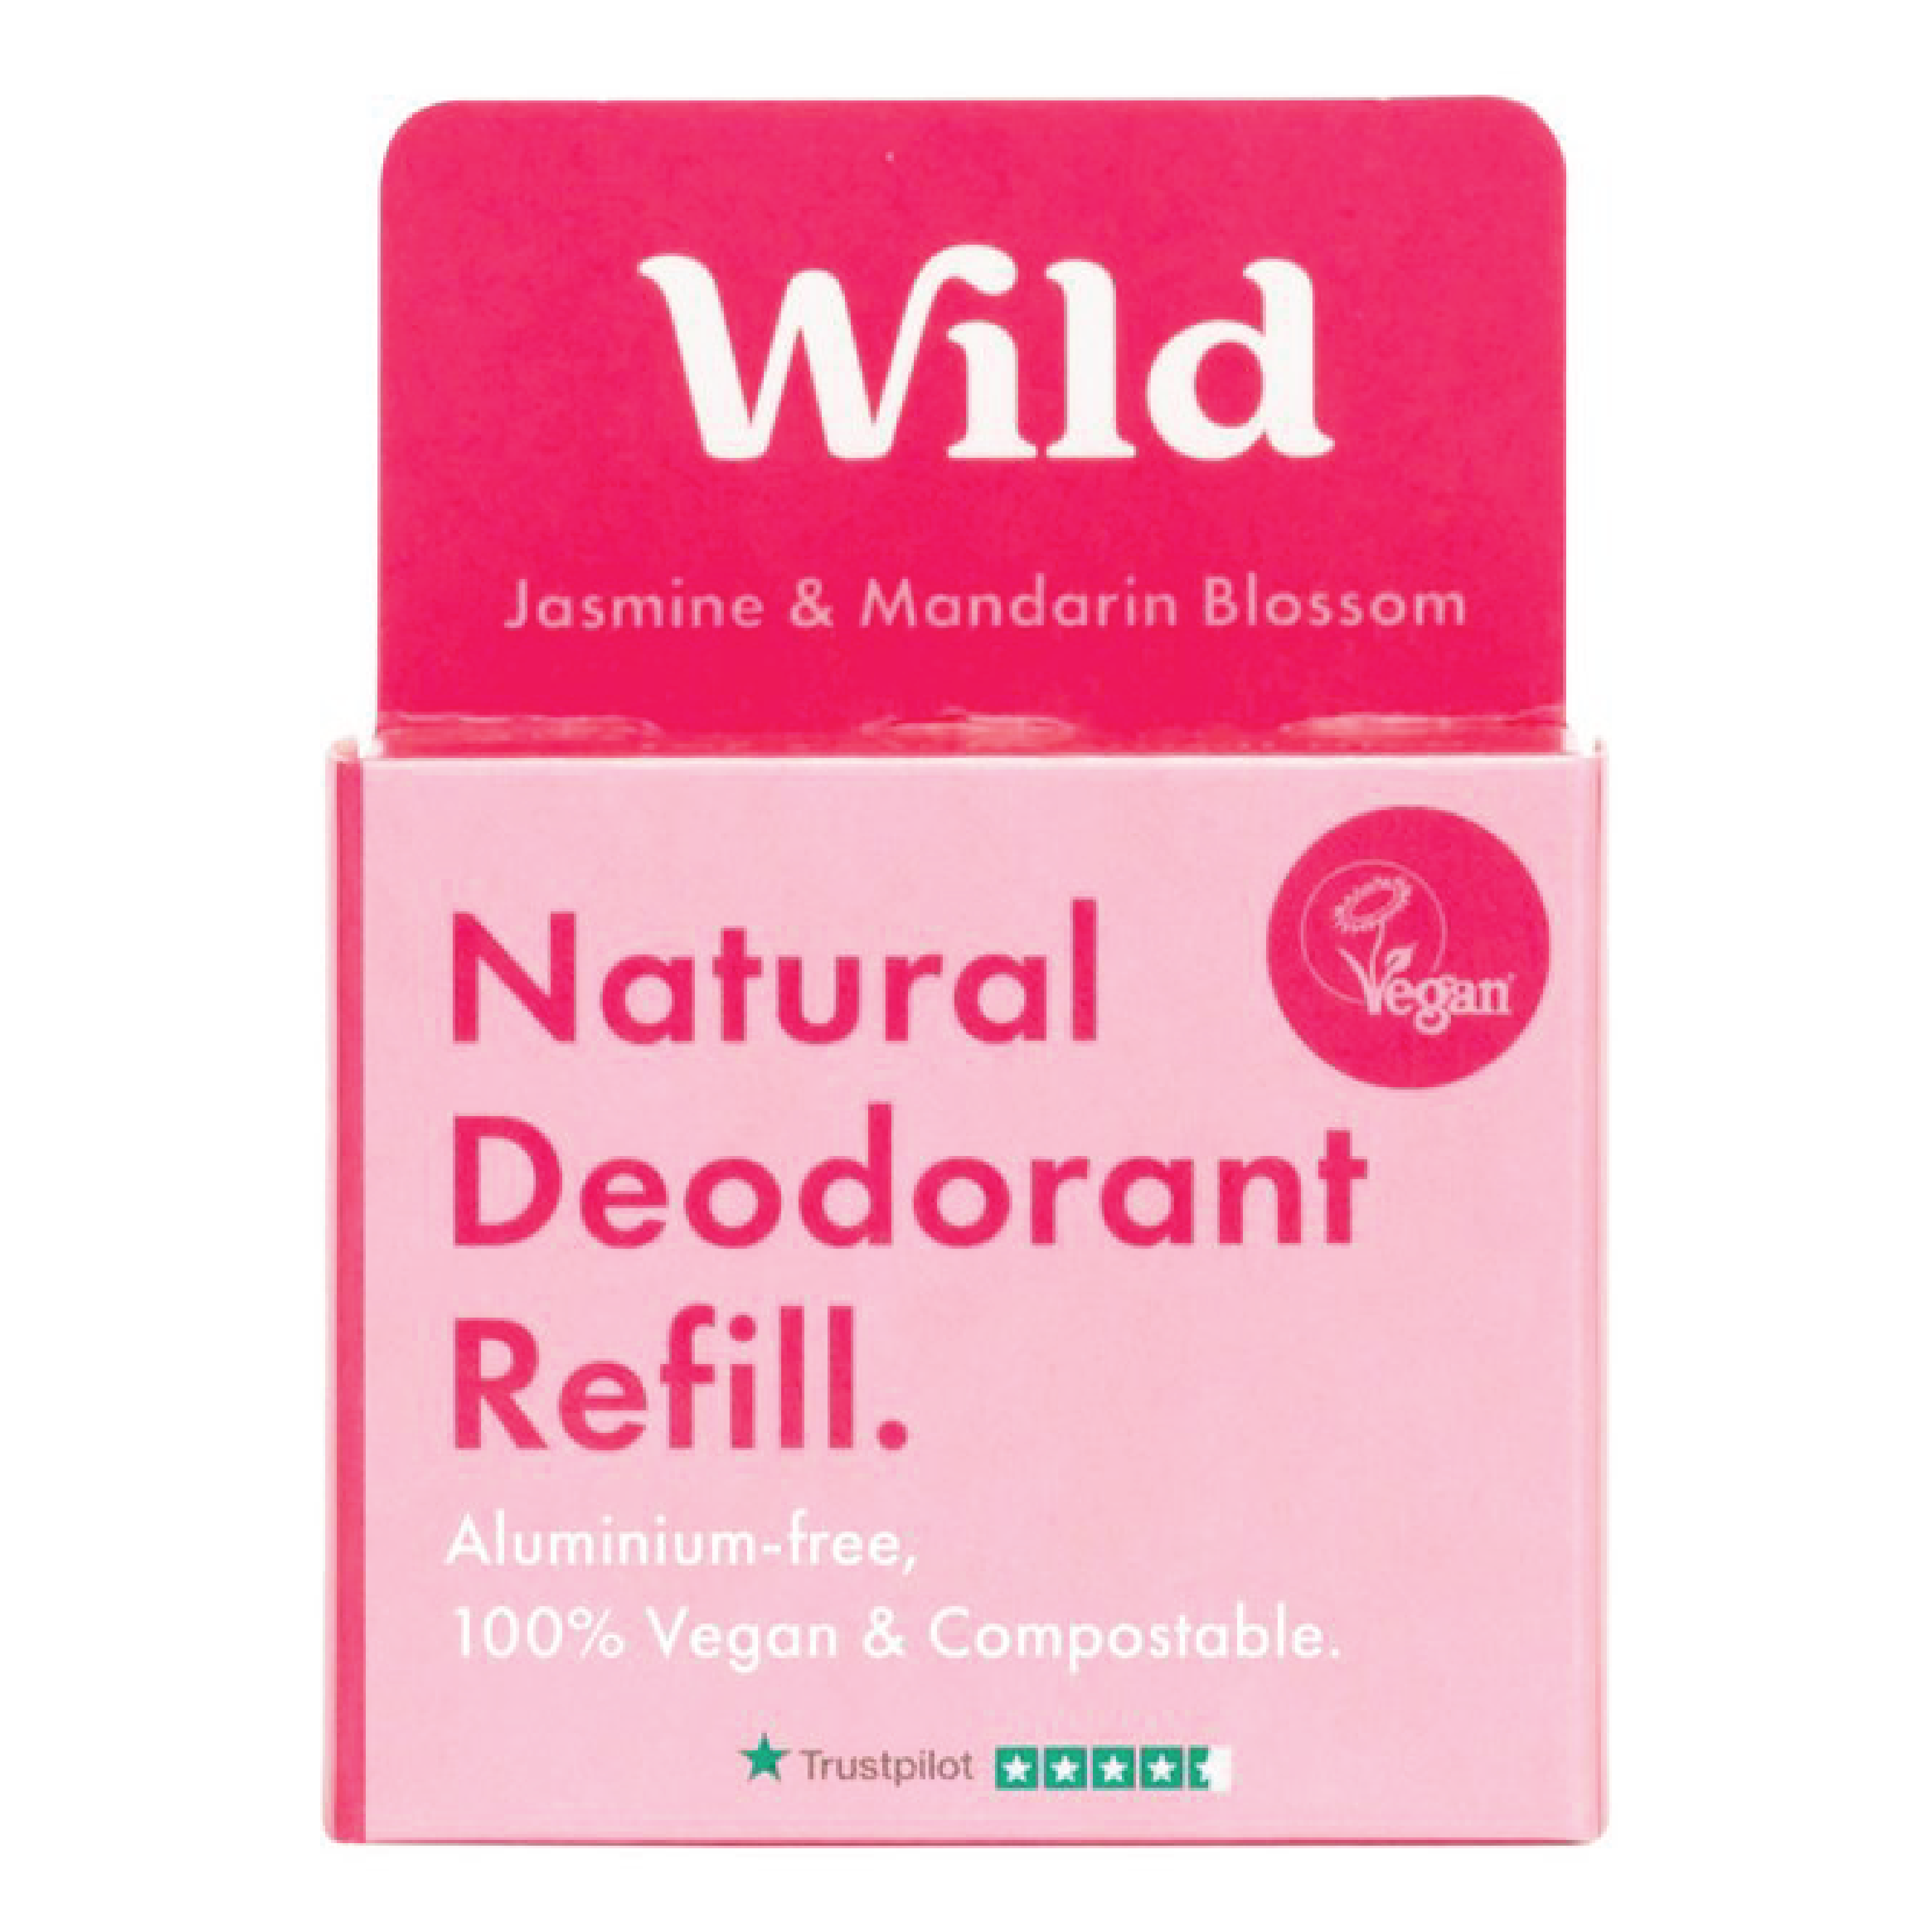 Wild Deo Jasmine & Mandarin Blossom Refill, 40 g